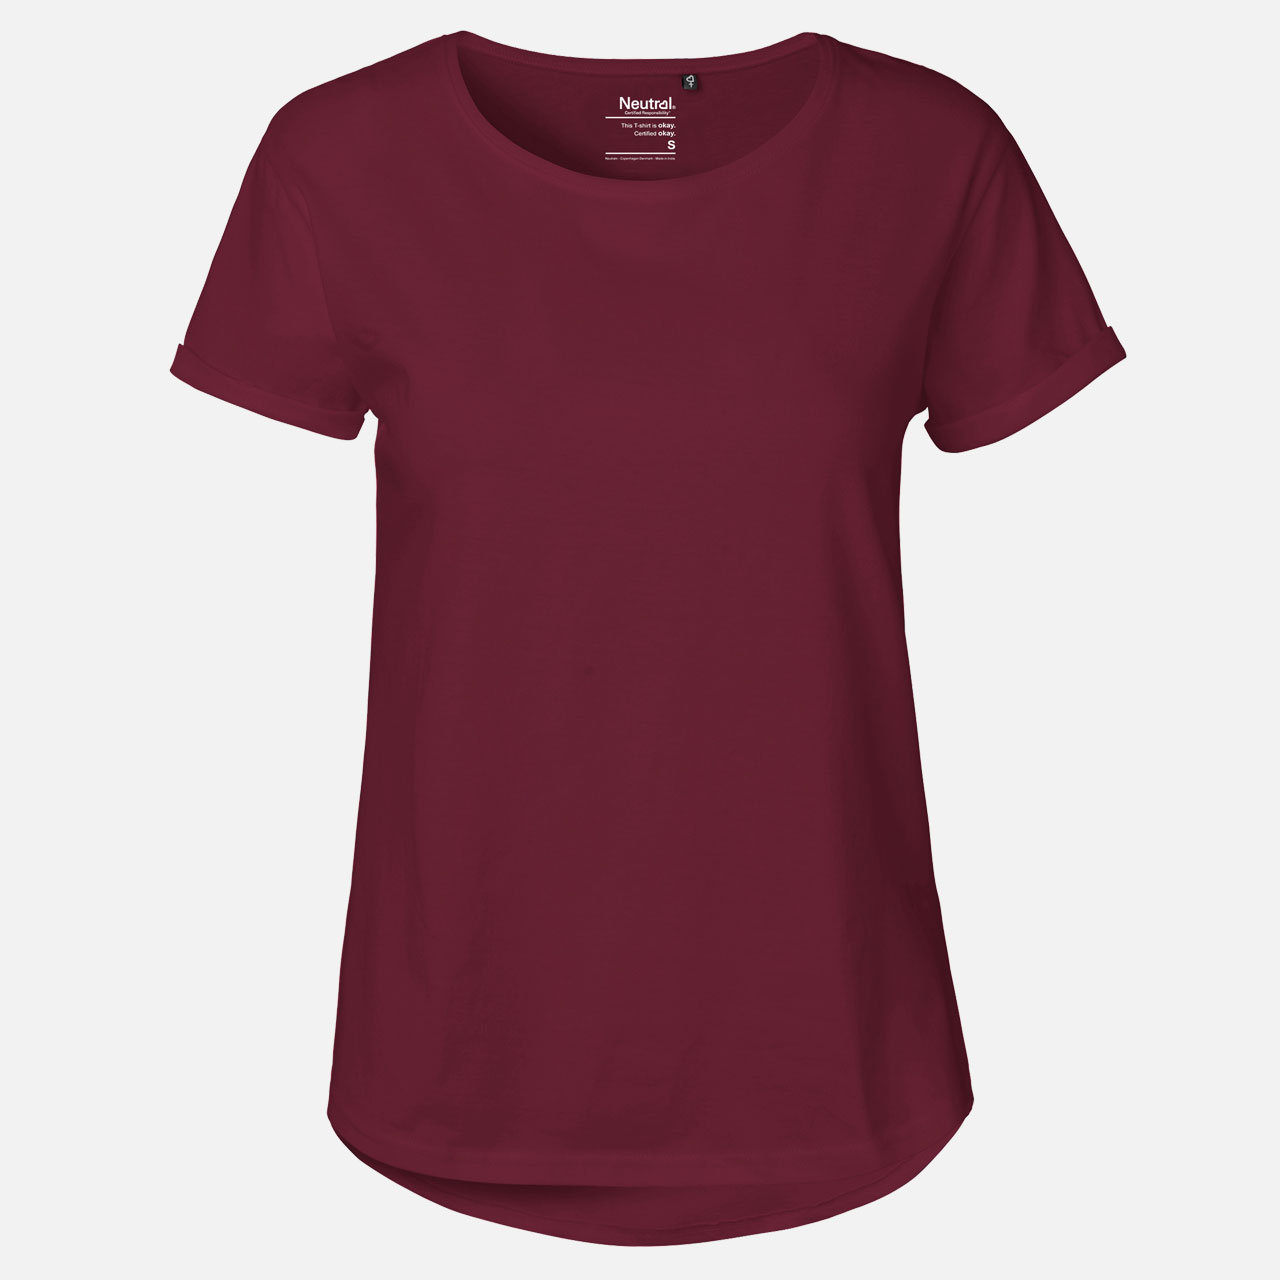 Doppelpack Ladies Roll Up Sleeve T-Shirt - Bio-Baumwolle Bordeaux L Bordeaux